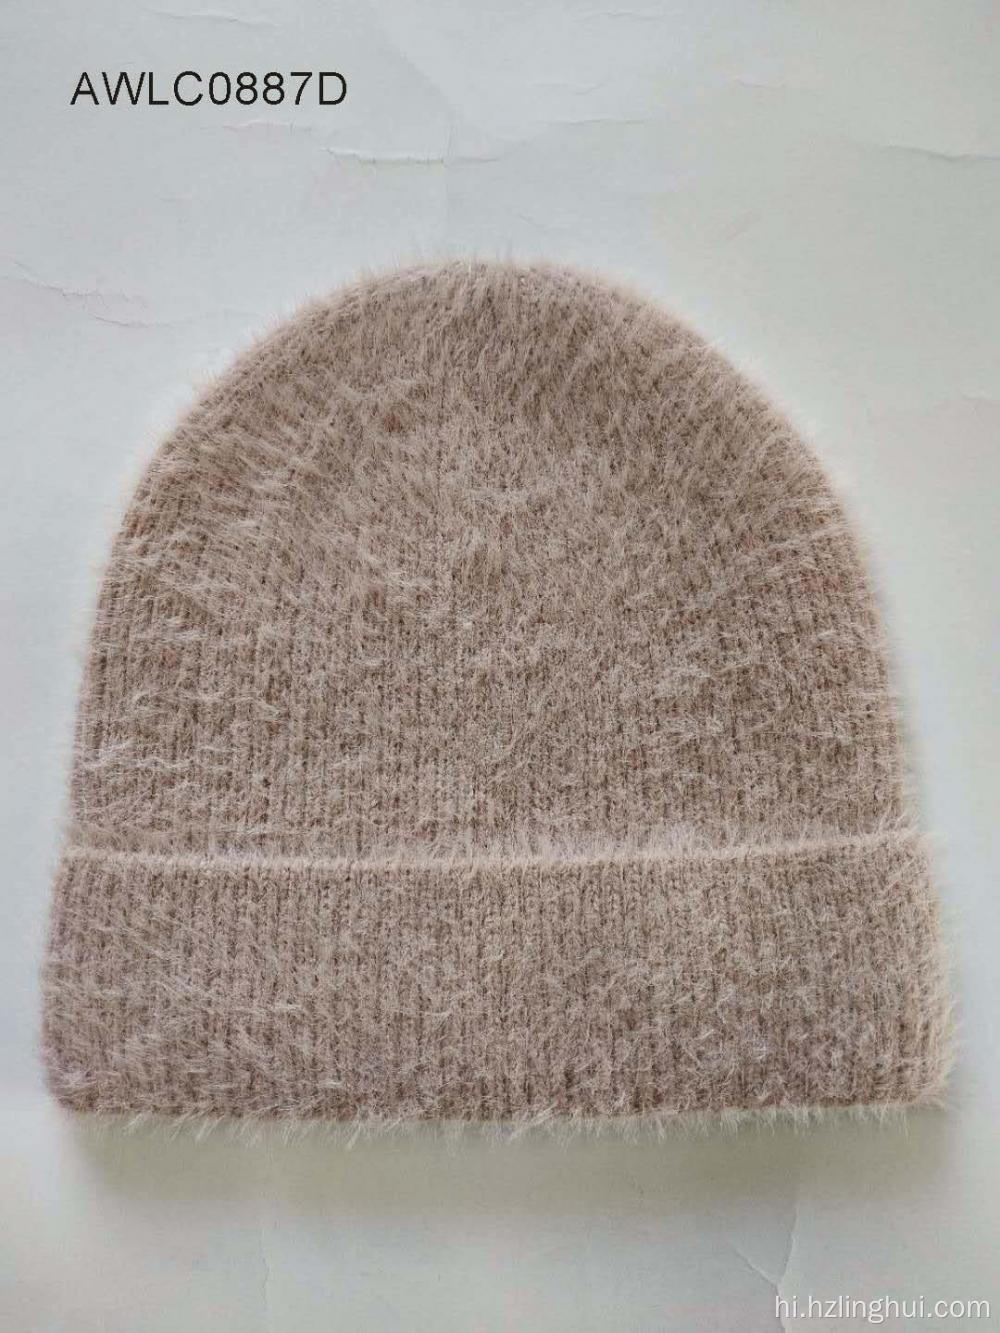 सर्दियों के बेनी टोपी बुना हुआ खोपड़ी टोपी बुना हुआ